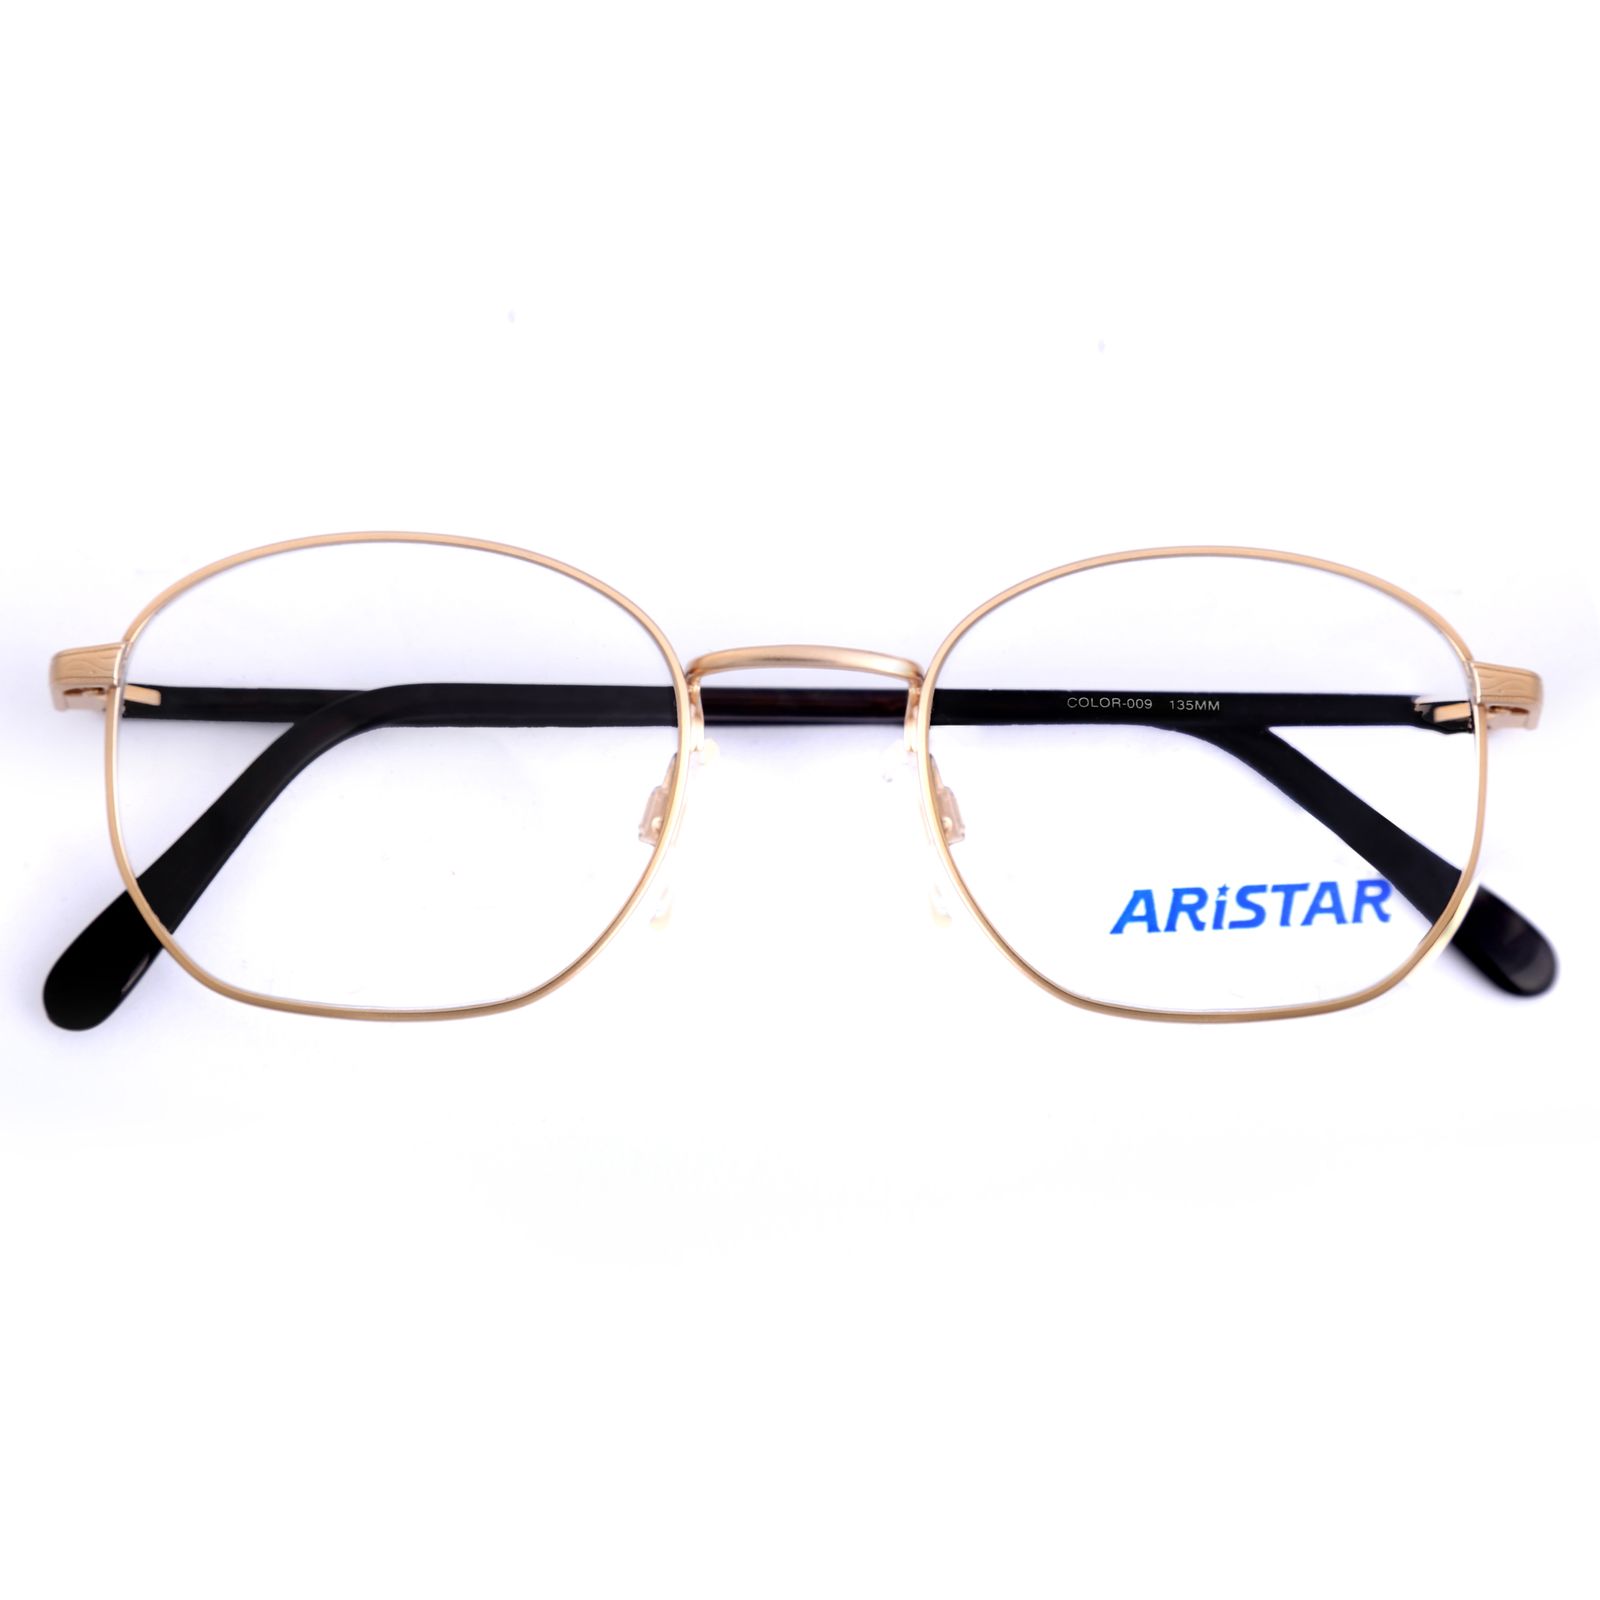 فریم عینک طبی آریستار مدل 6304 -  - 4